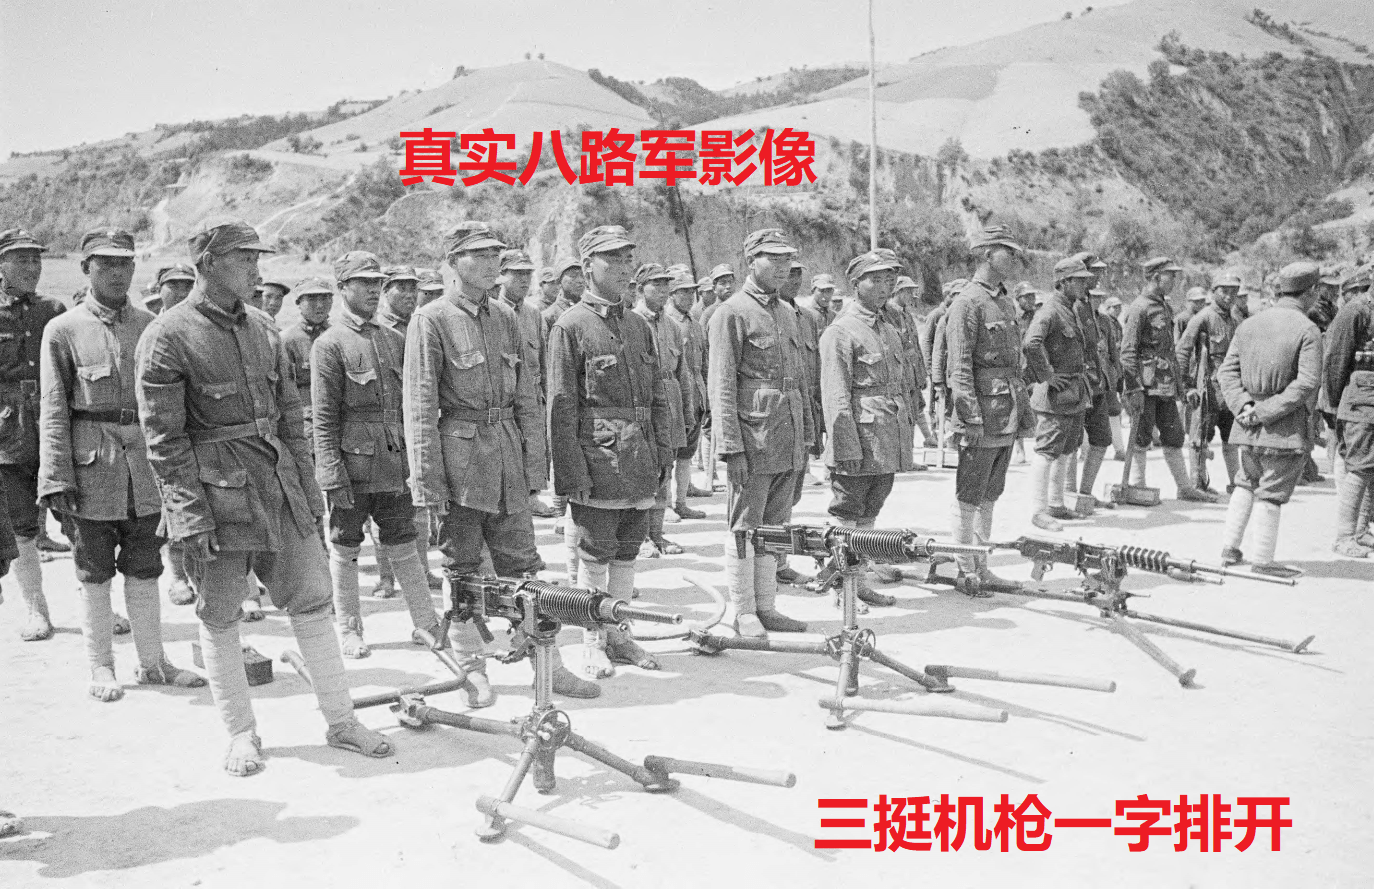 真实八路军影像,装备日军最先进的机枪,脚上穿的却是草鞋